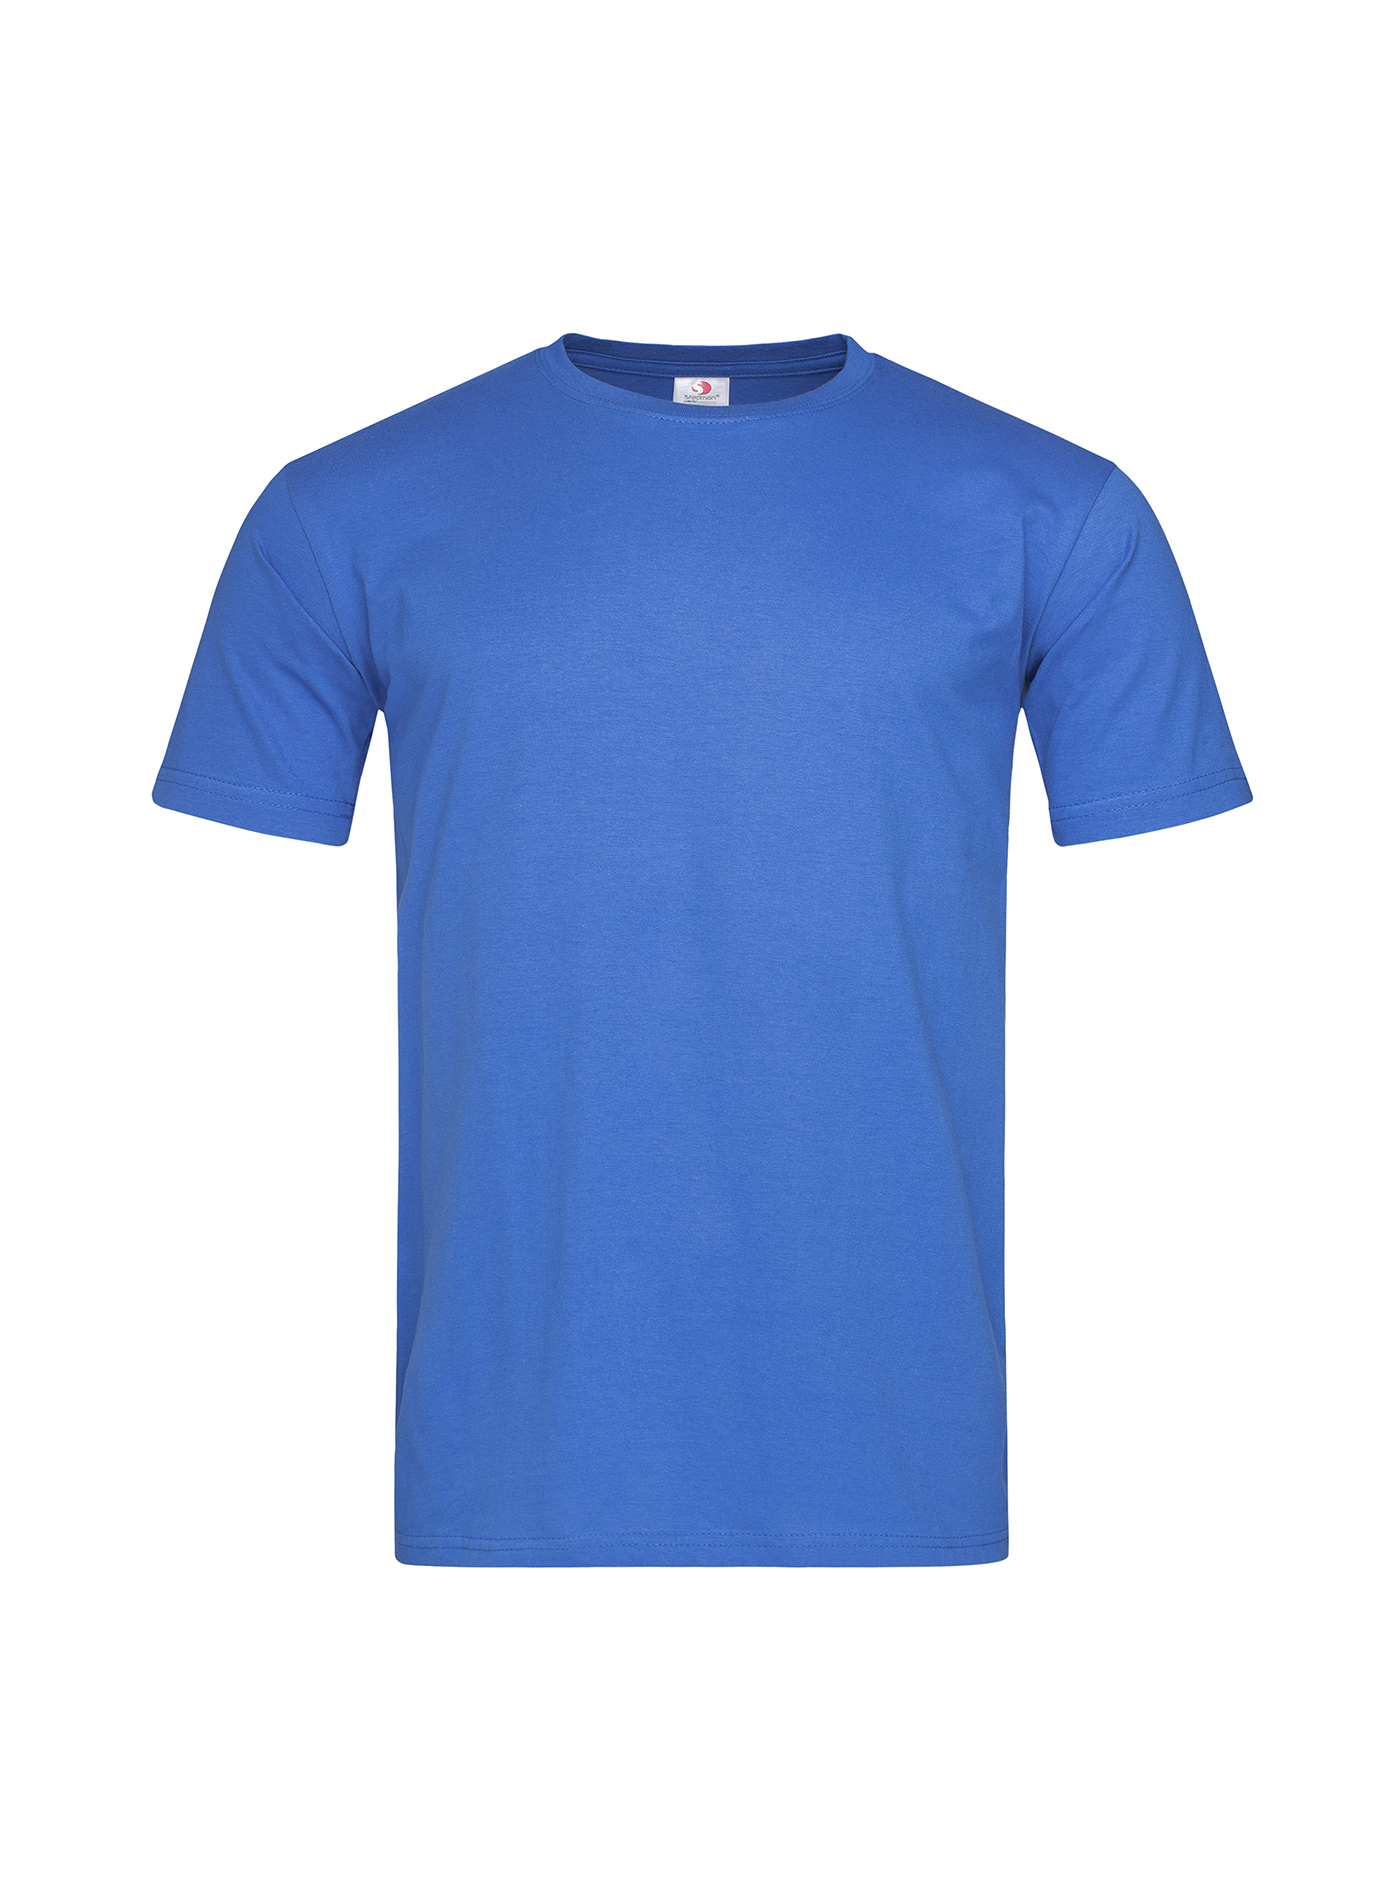 Pánské tričko Stedman Fitted - Královská modrá XL